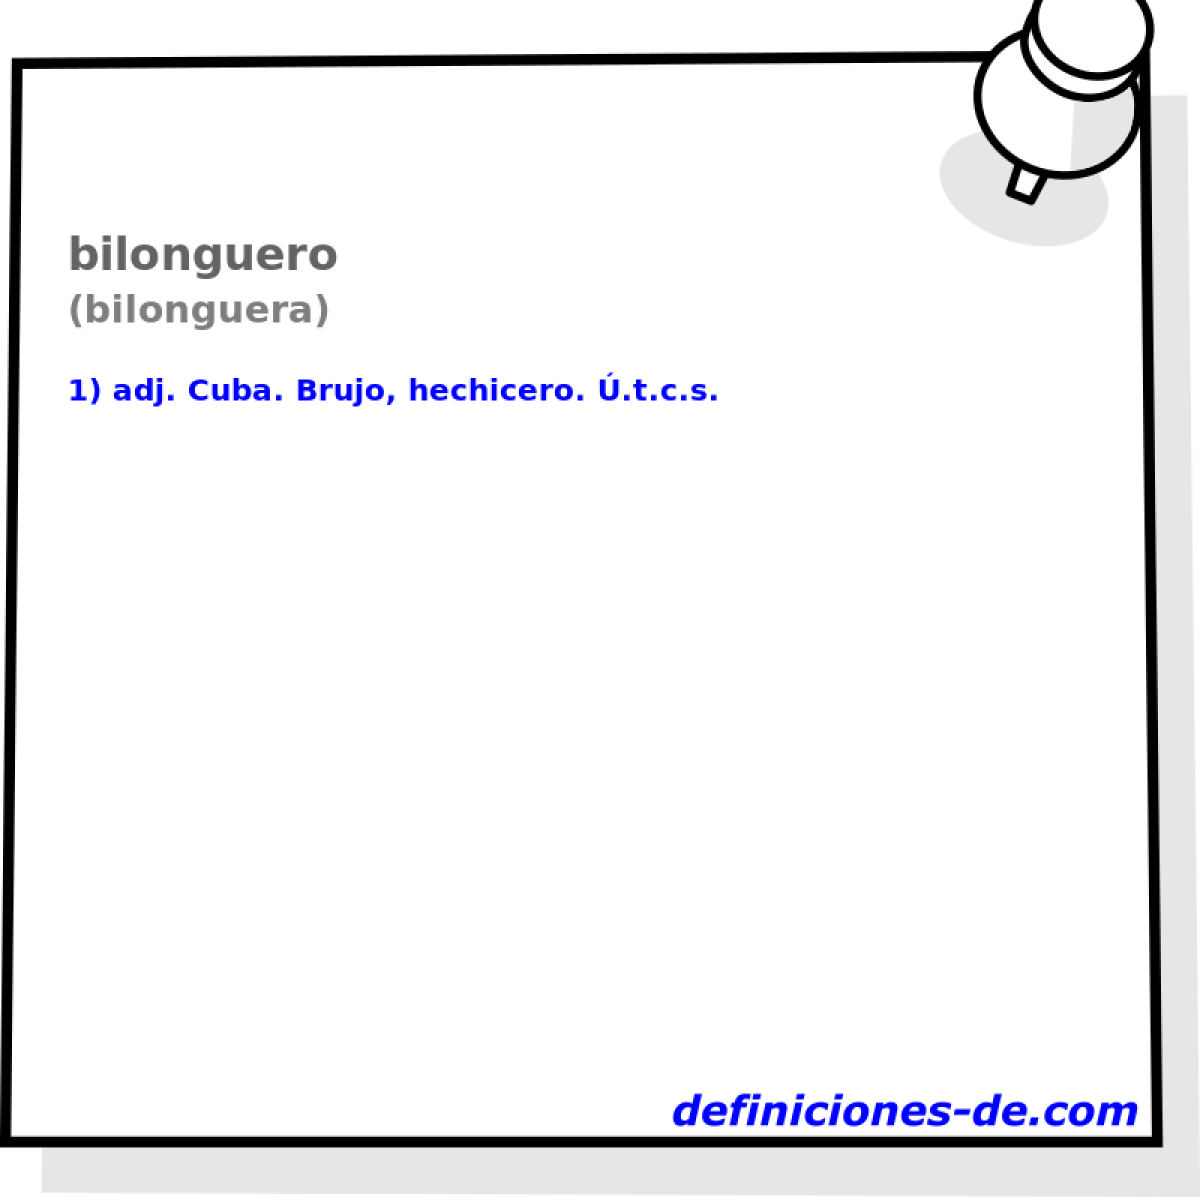 bilonguero (bilonguera)